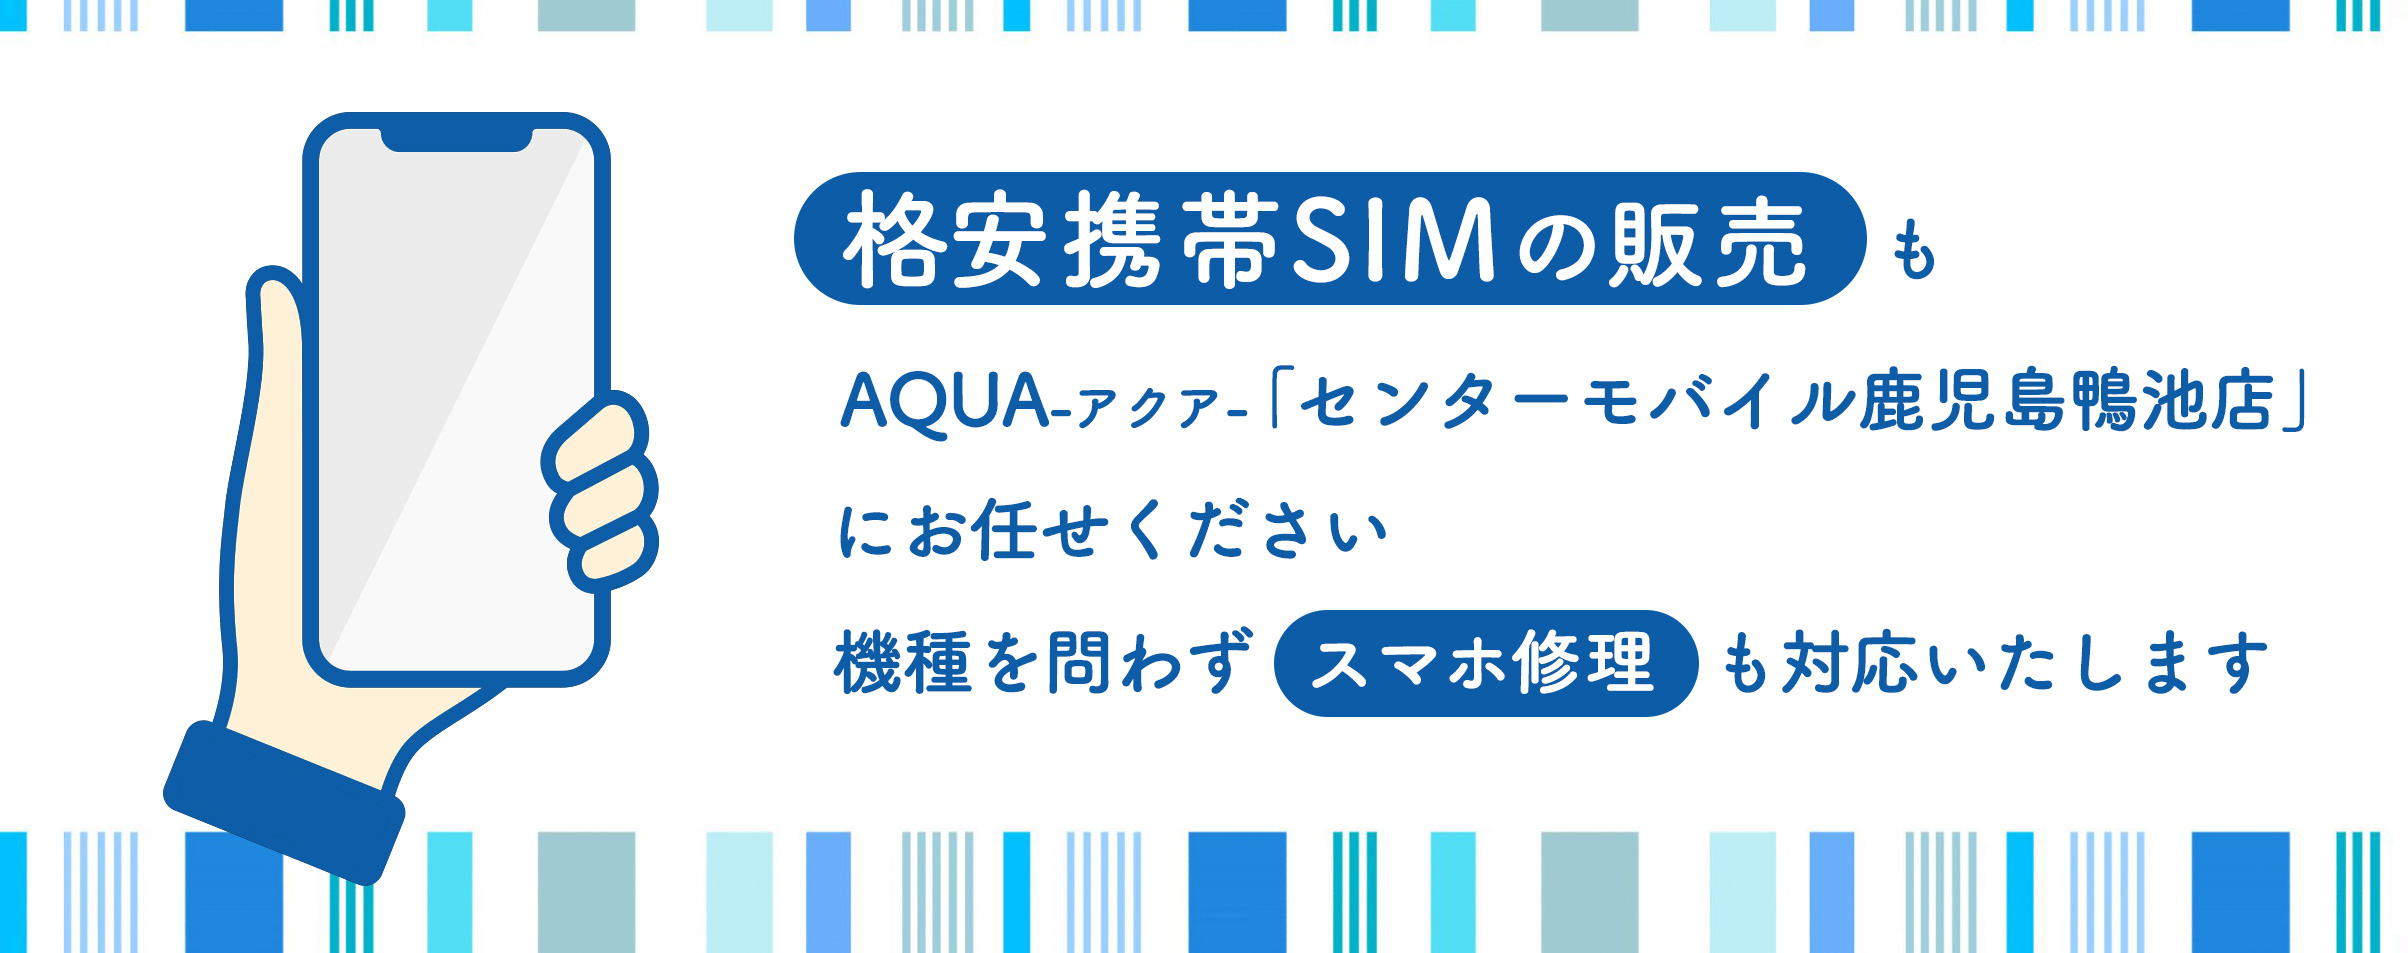 格安携帯SIMの販売も、AQUA-アクア-「センターモバイル鹿児島鴨池店」にお任せください。機種を問わずスマホ修理も対応いたします